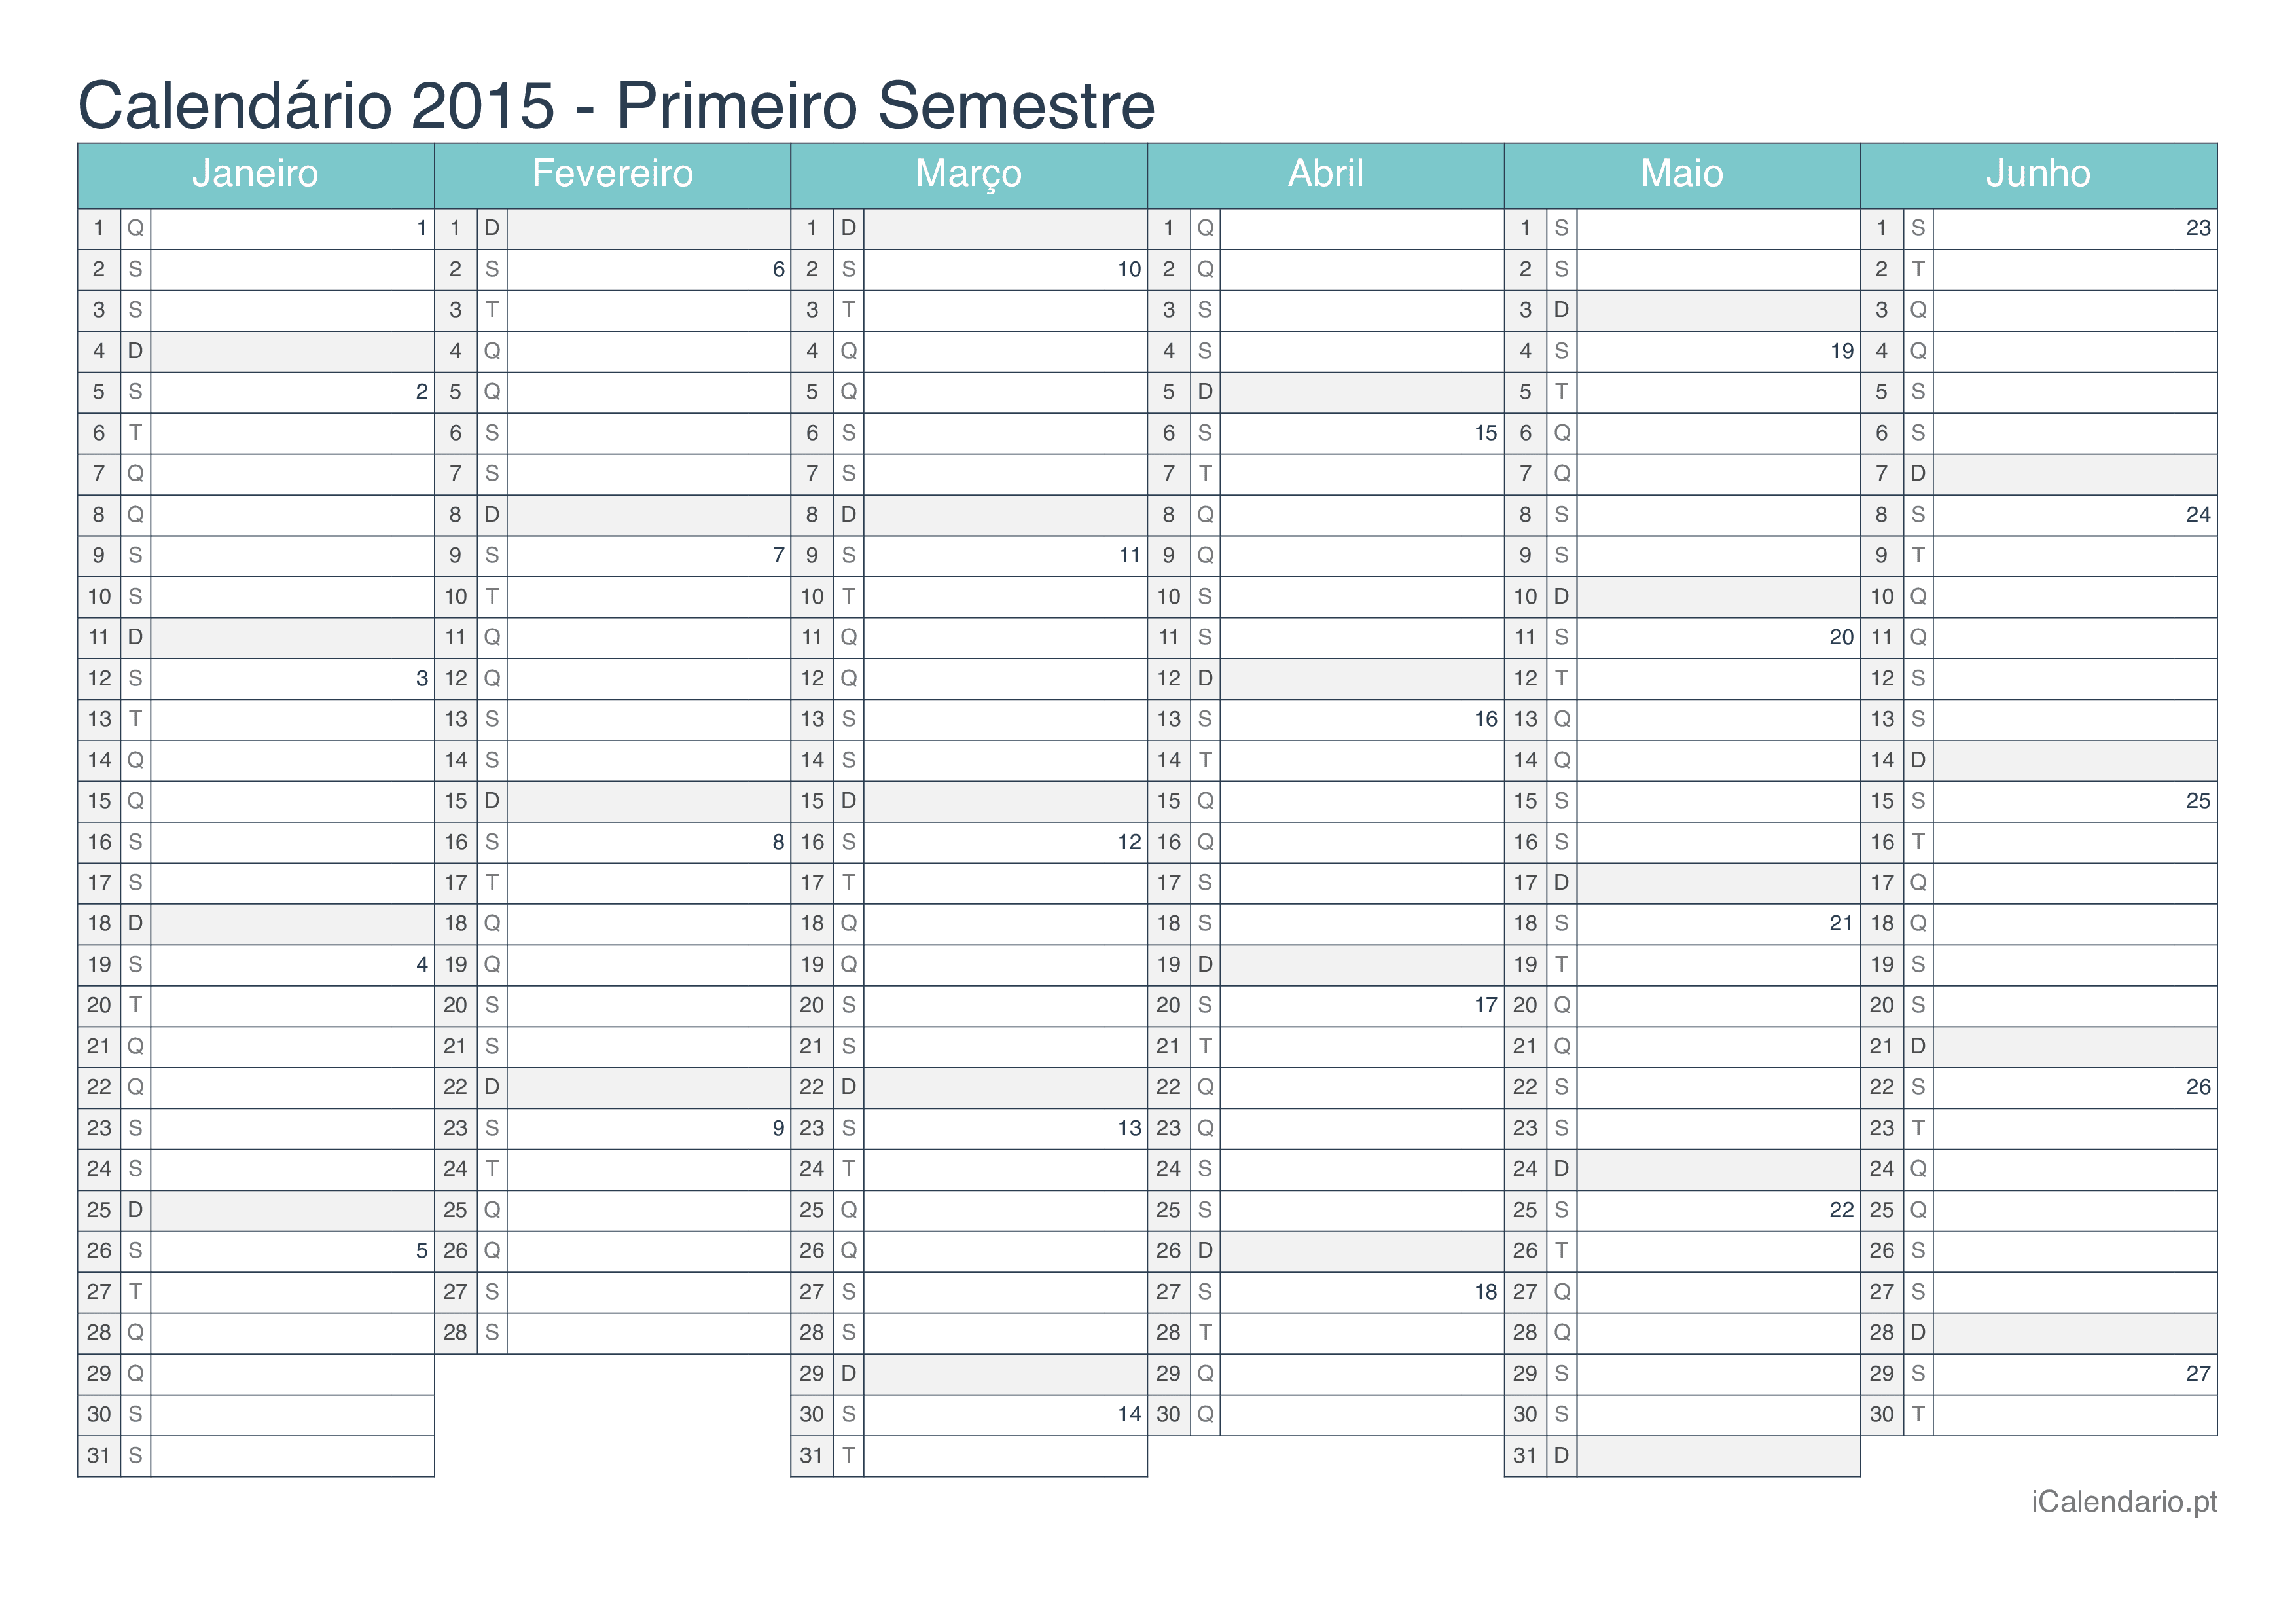 Calendário por semestre com números da semana 2015 - Turquesa